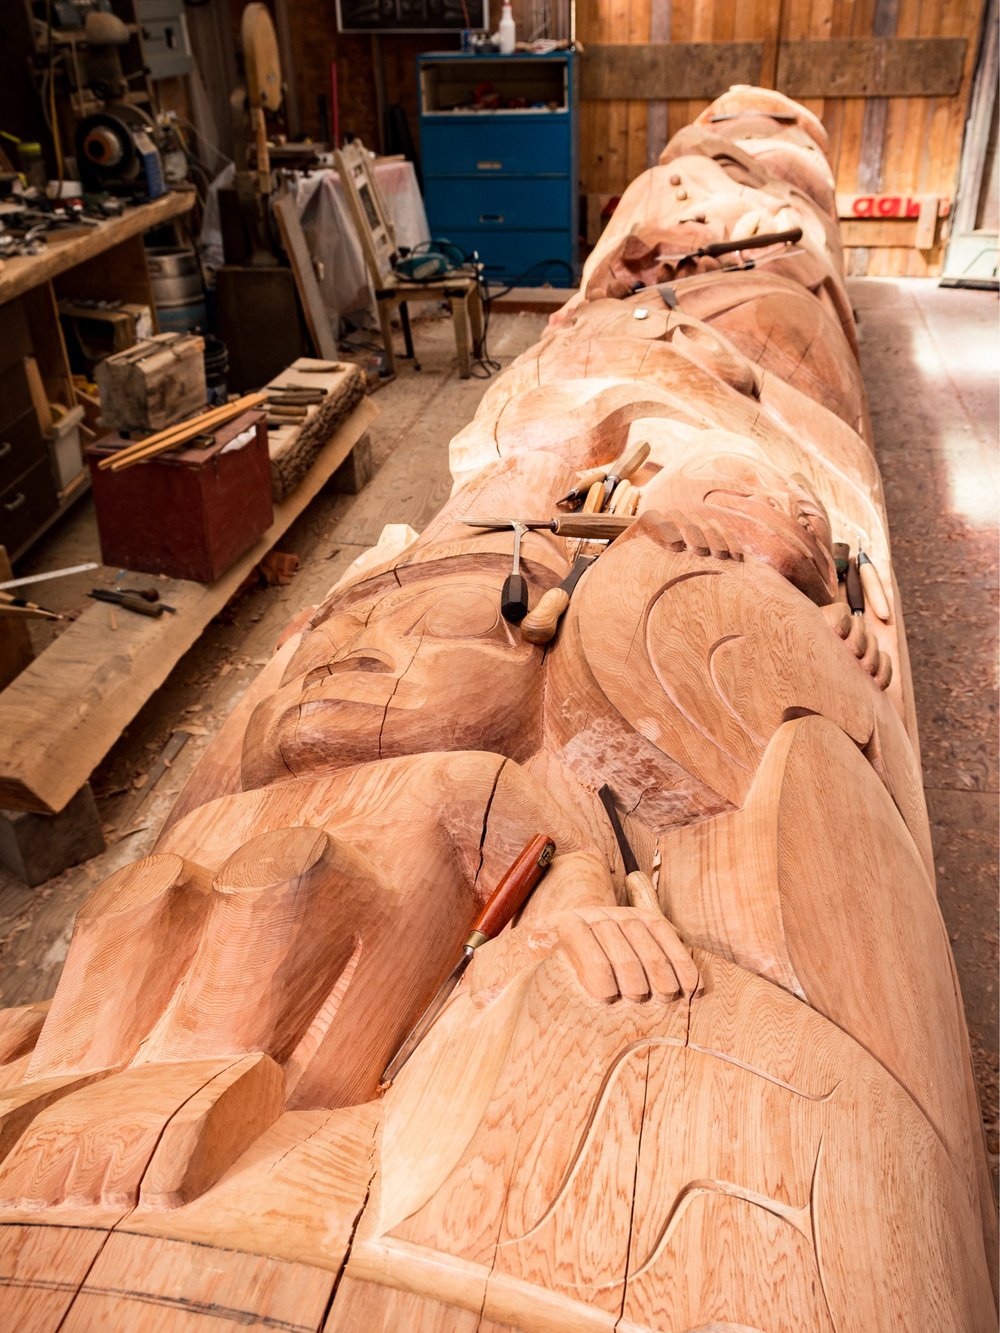   Cedar Pole Carving  